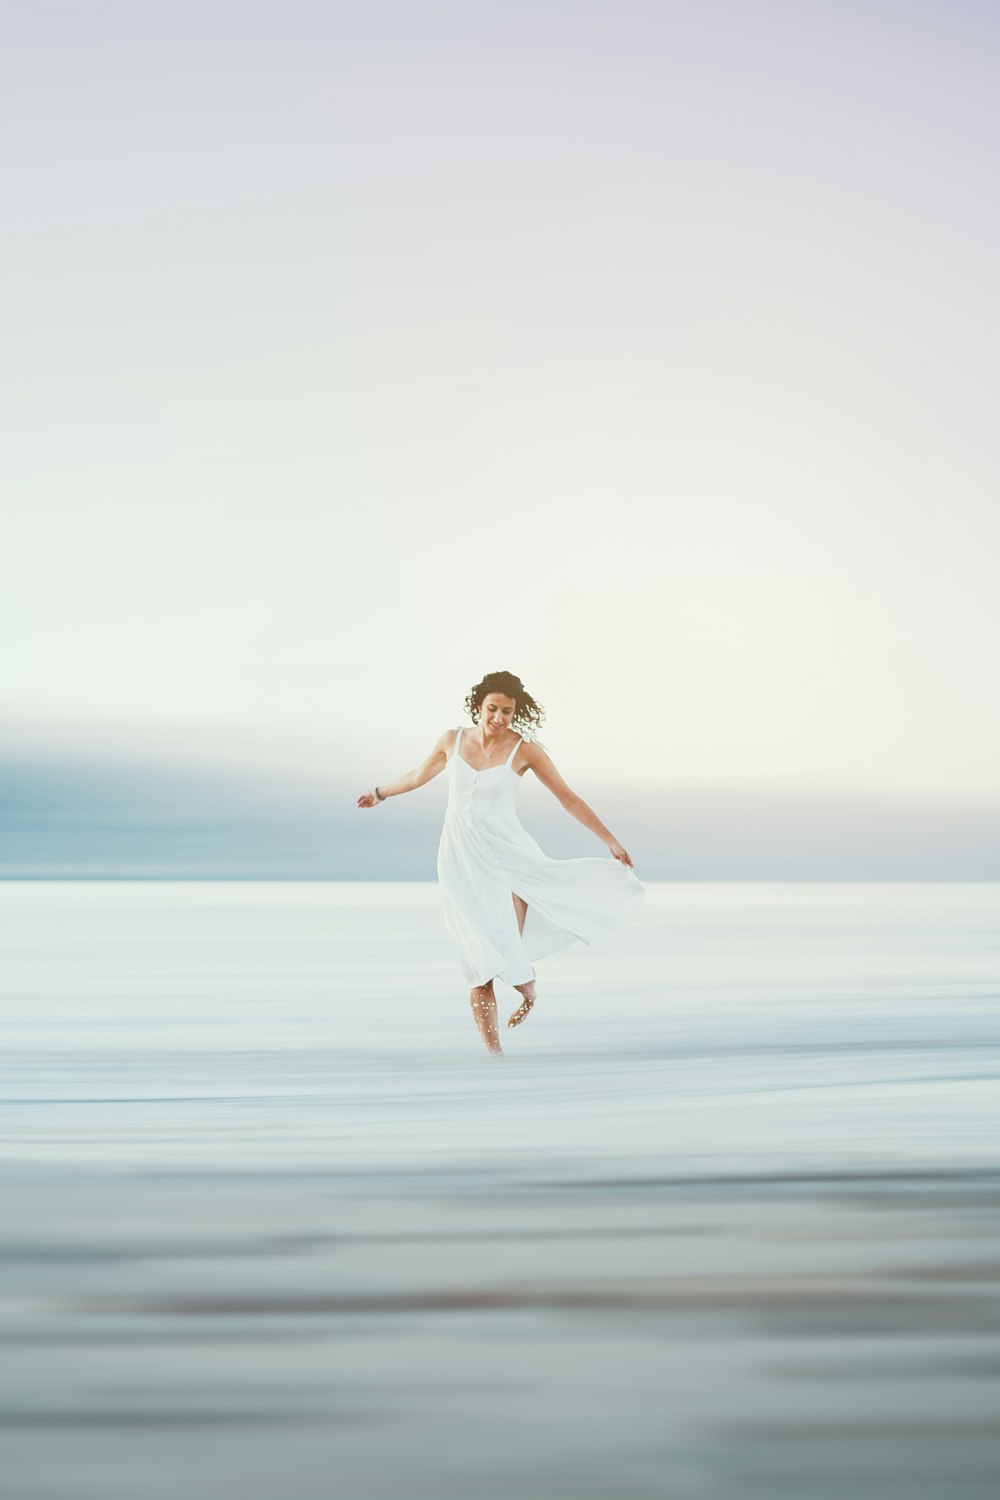 Una mujer con un vestido blanco saltando en el aire